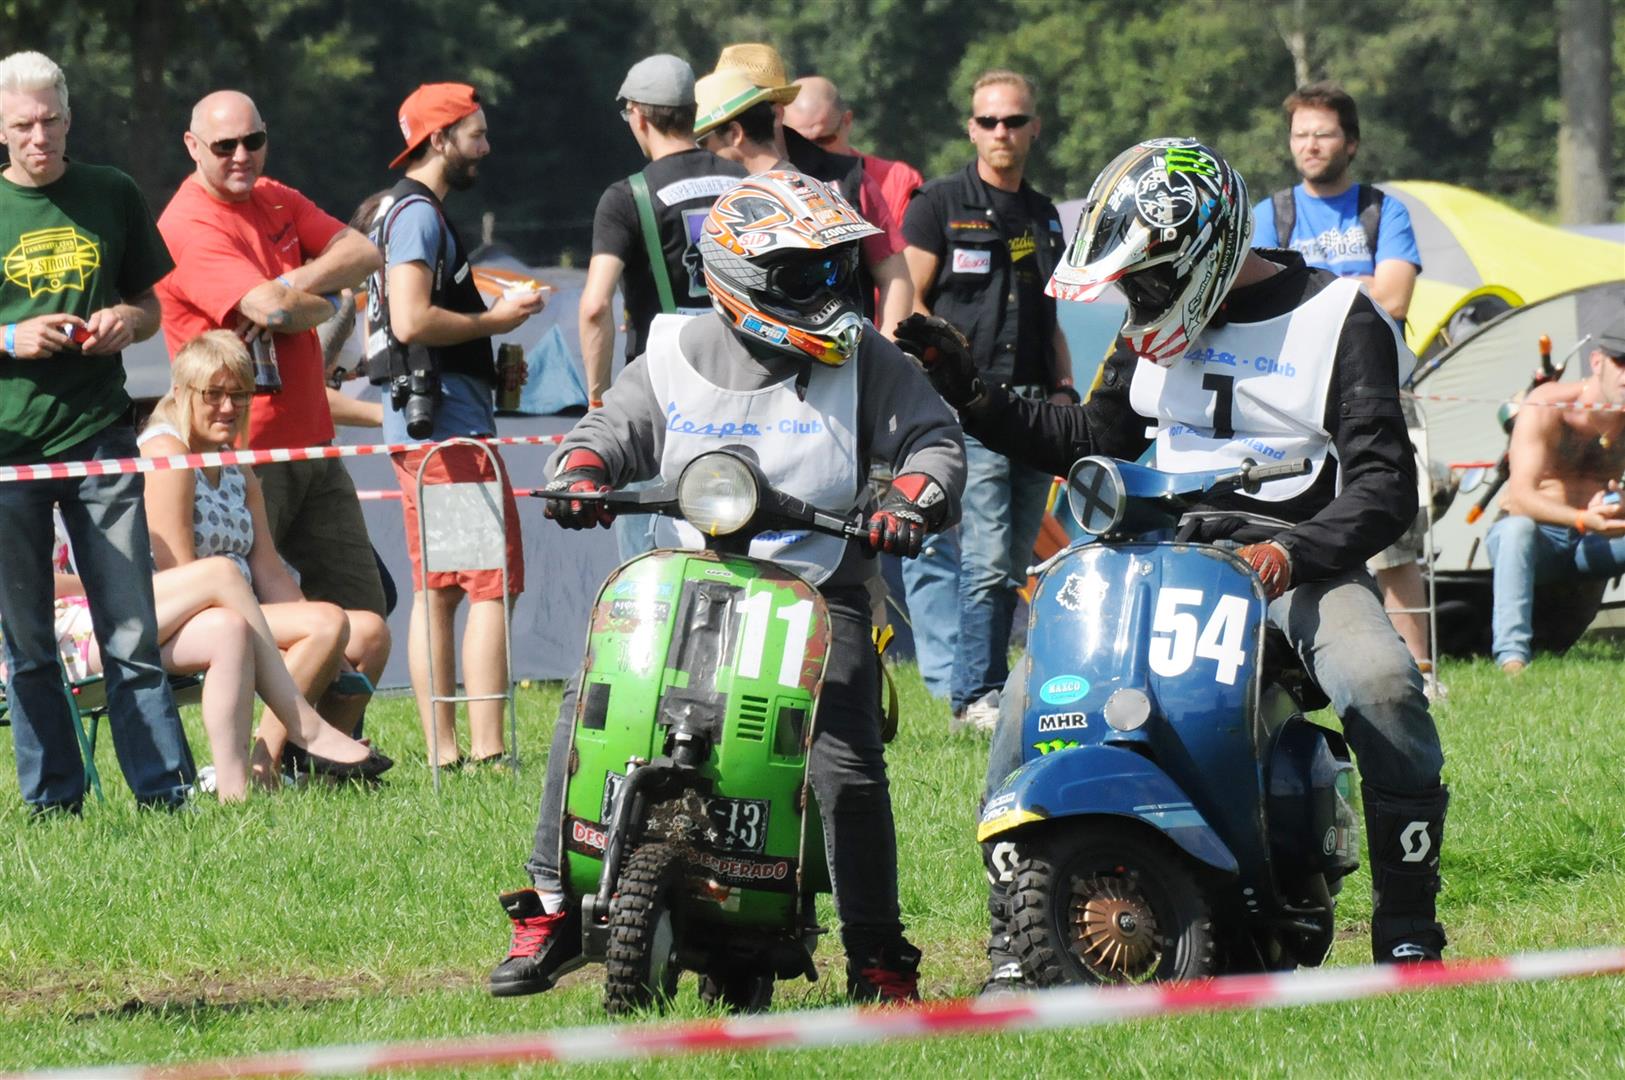 DSC_5189 Venlo Scooter Euro Rally